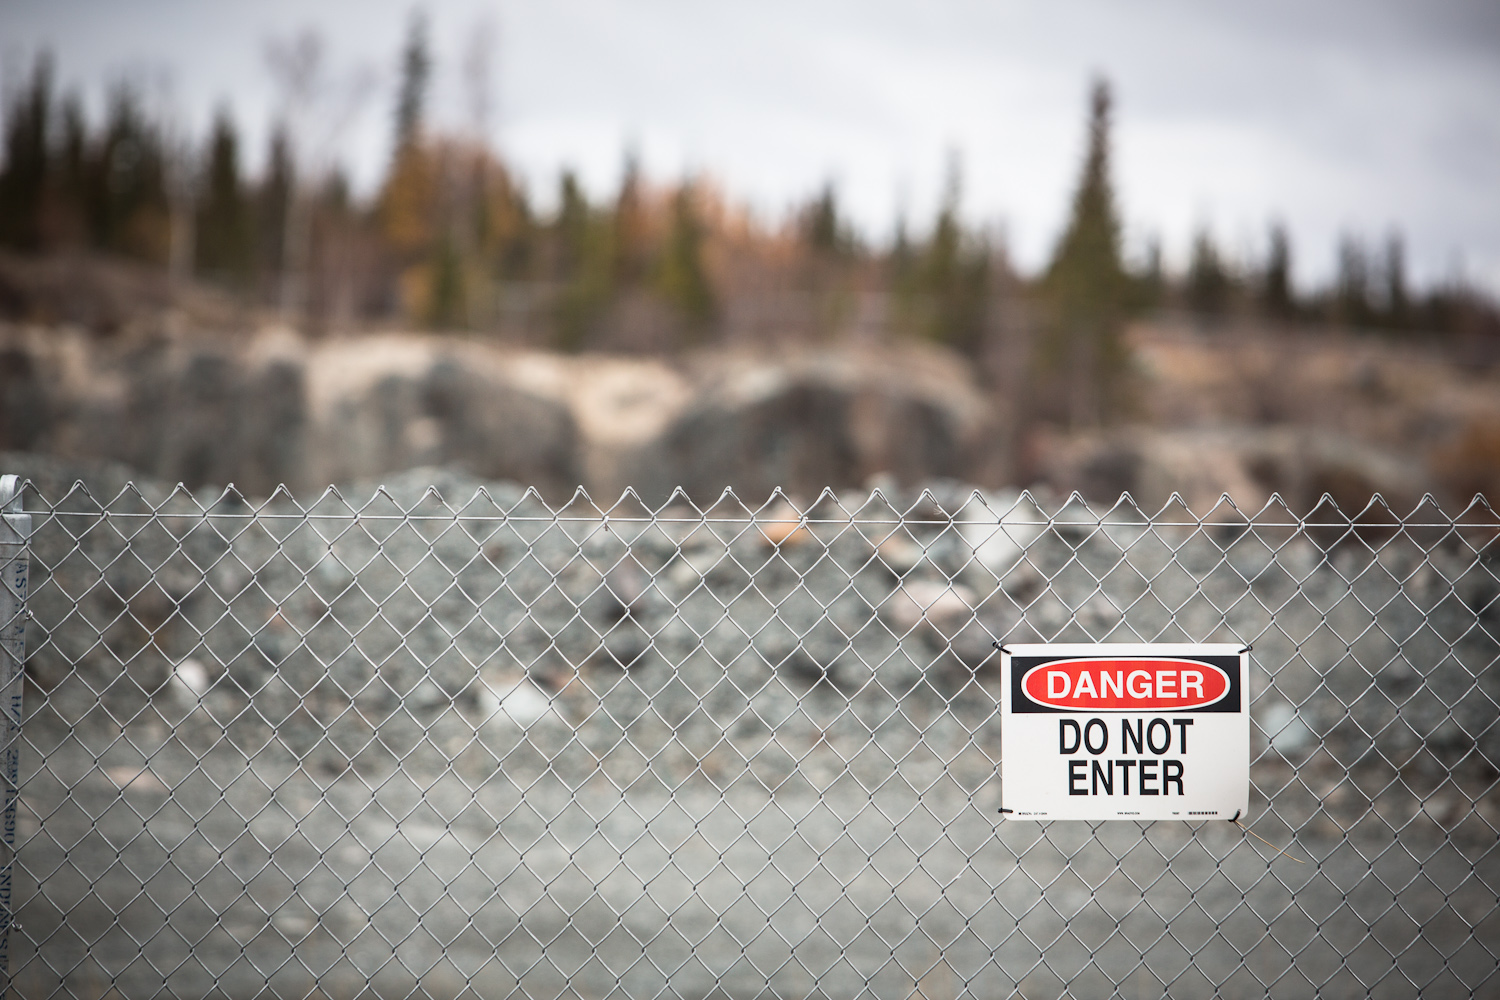 Cette photo montre une clôture à mailles de chaîne avec un panneau indiquant « Danger Do Not Enter » (Danger, ne pas entrer)